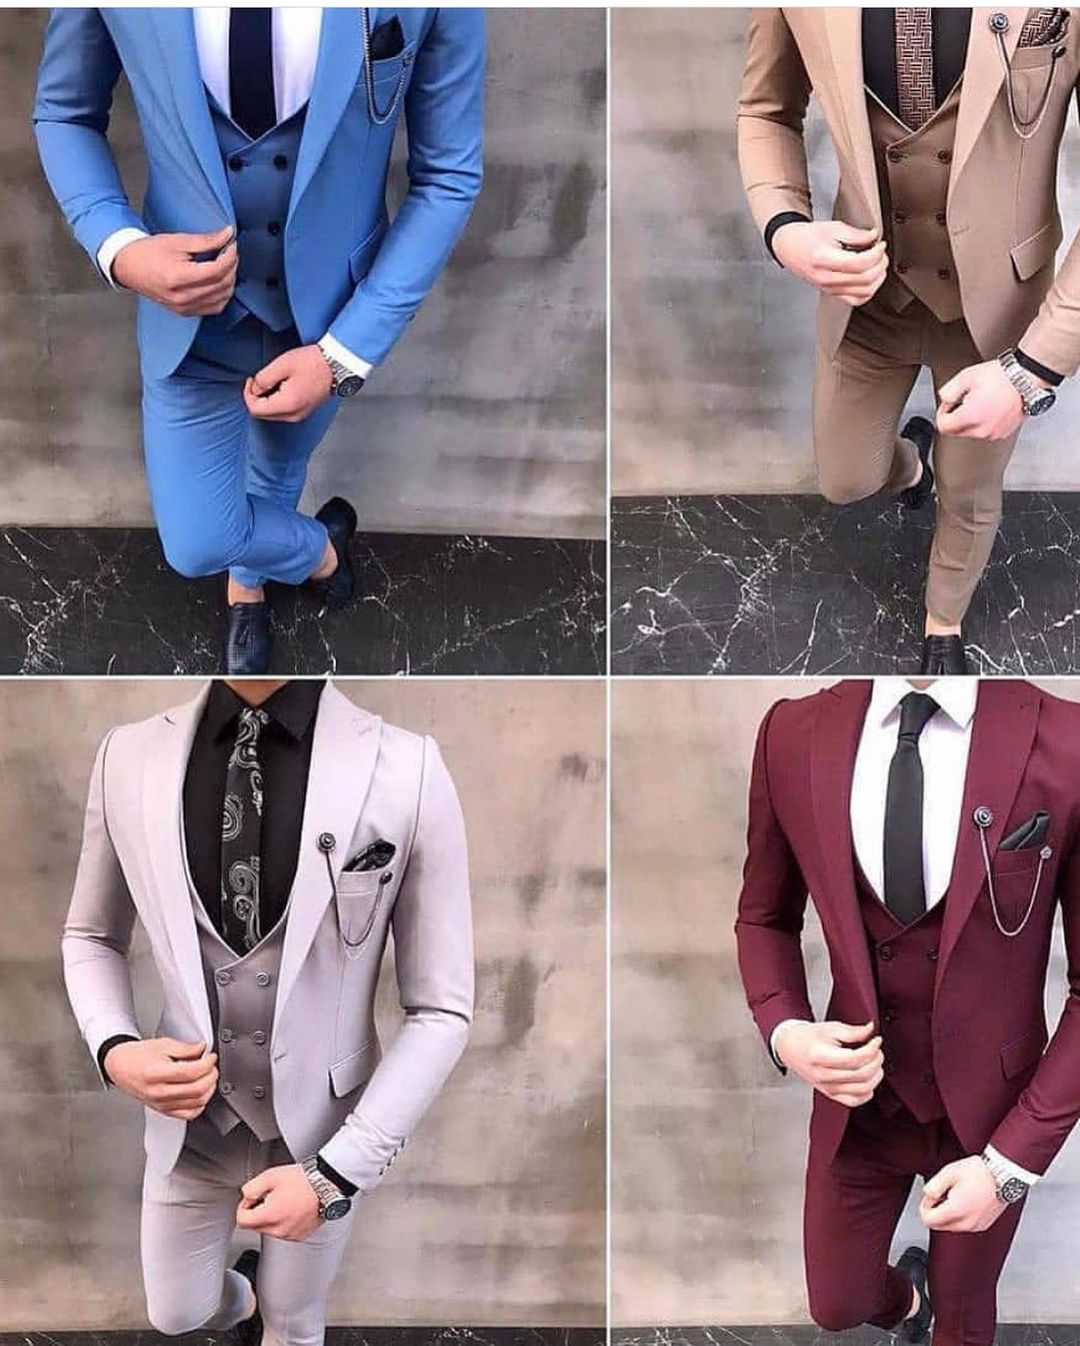 Buy Wine Cutdana Work Wedding Tuxedo Suits for Men Online